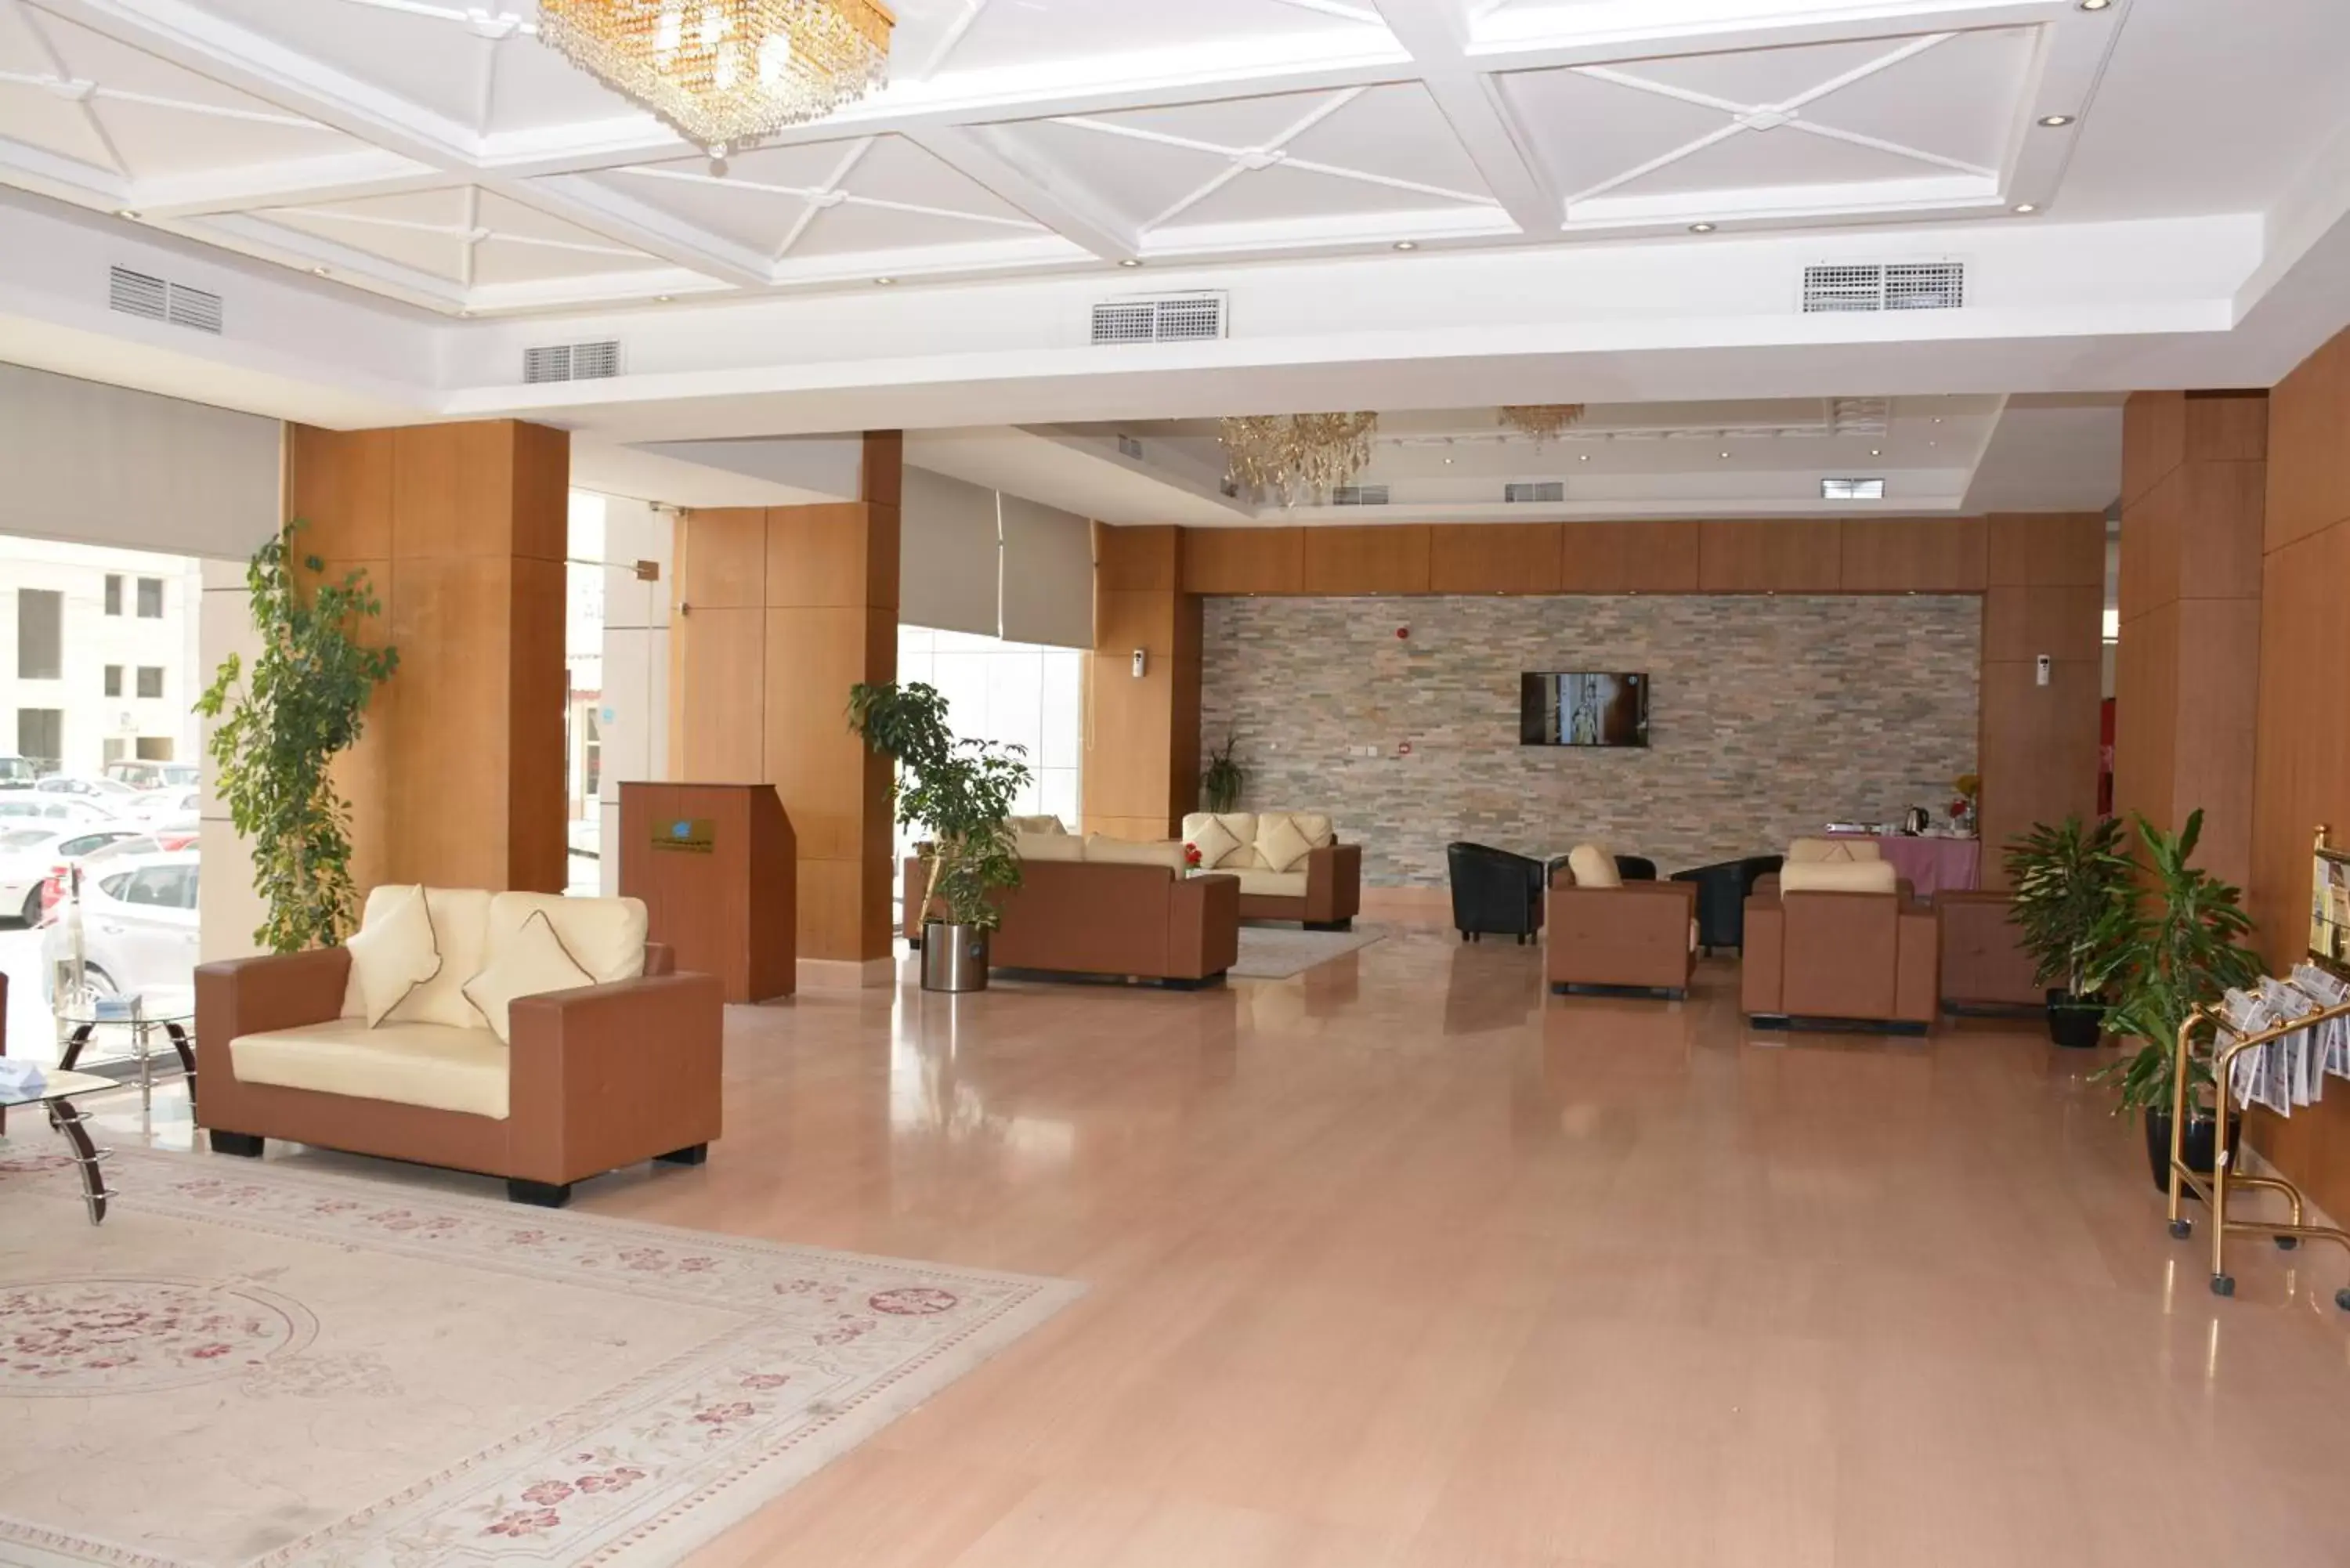 Lobby or reception, Lobby/Reception in Continental Inn Hotel Al Farwaniya